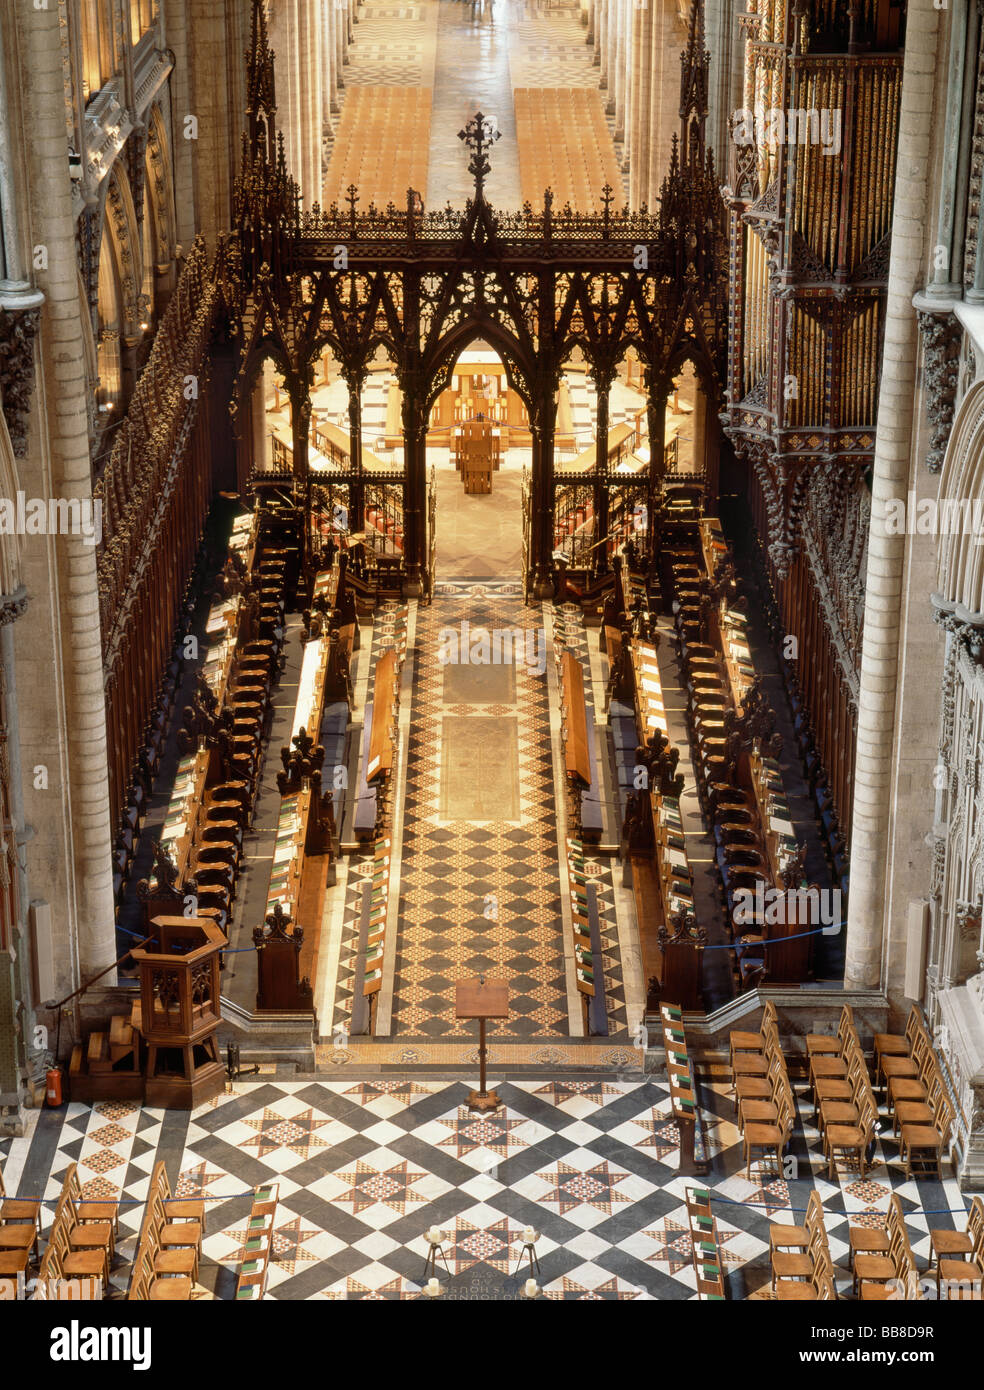 La catedral de Ely visión de alto nivel del triforio east end Foto de stock